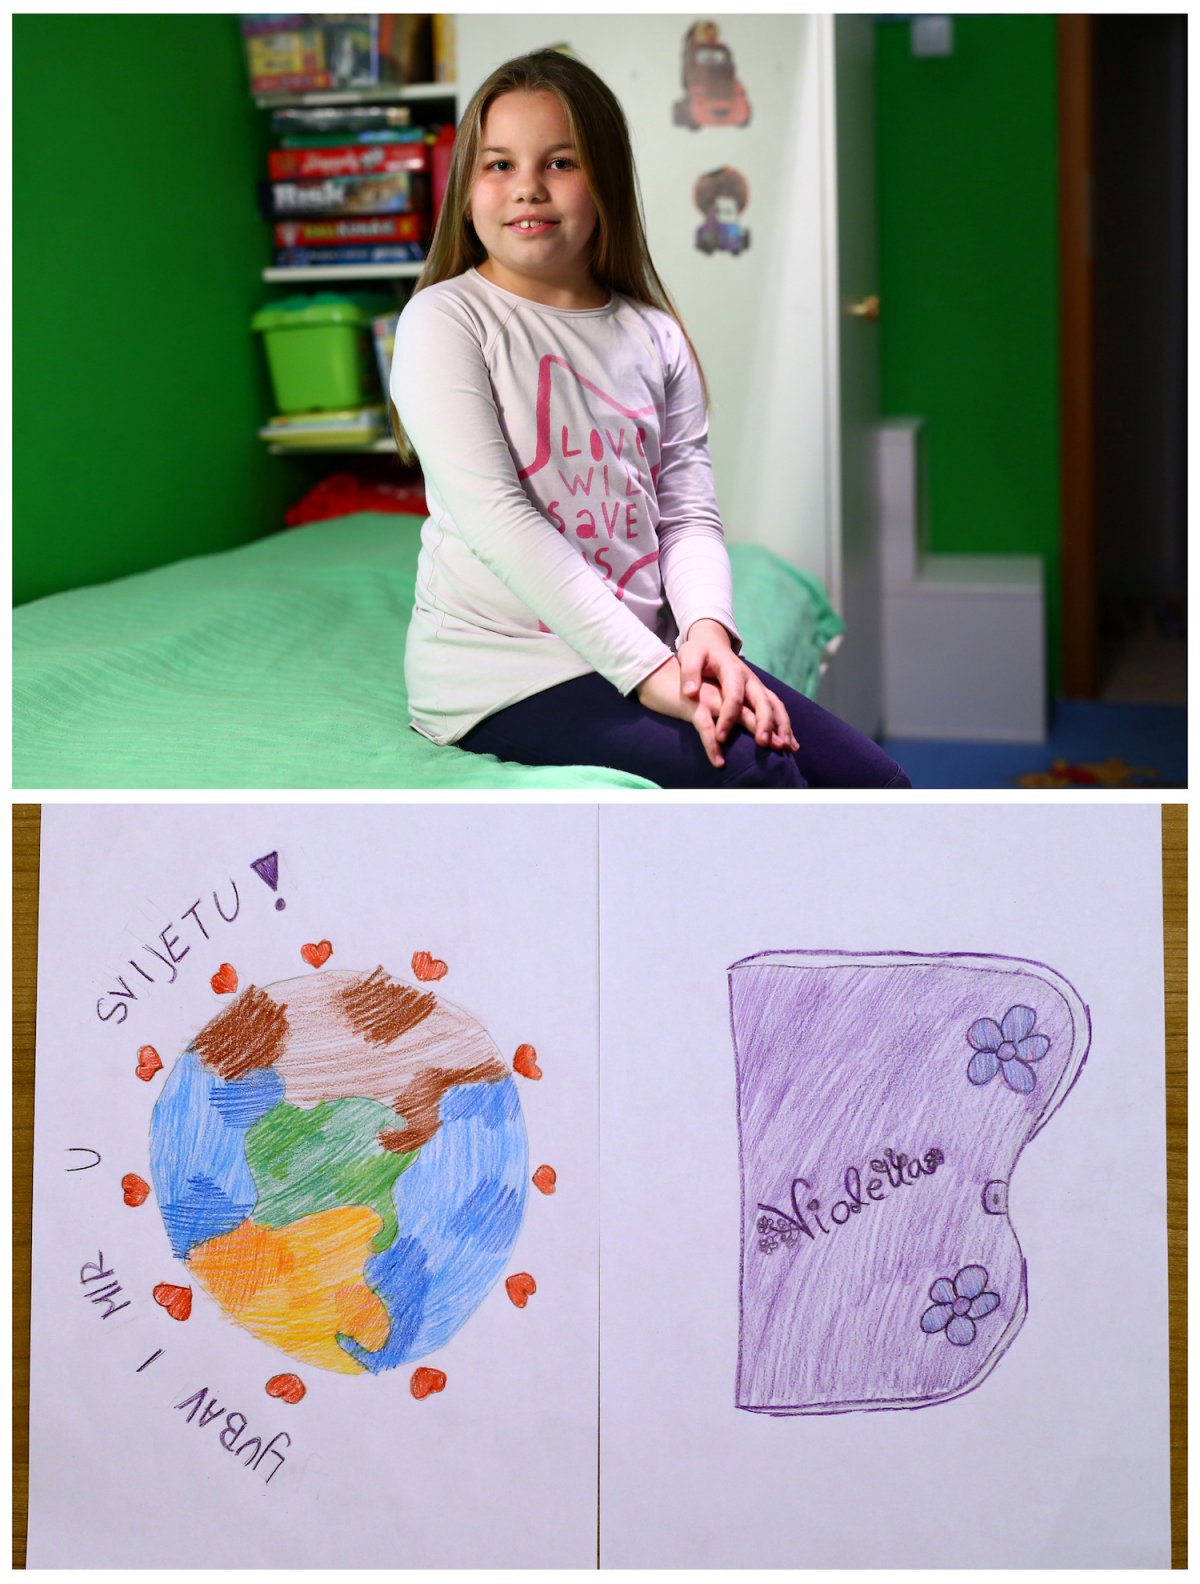 14. Восьмилетняя Дора из Хорватии мечтает о любви и мире во всем мире. А еще она хотела бы получить дневник.